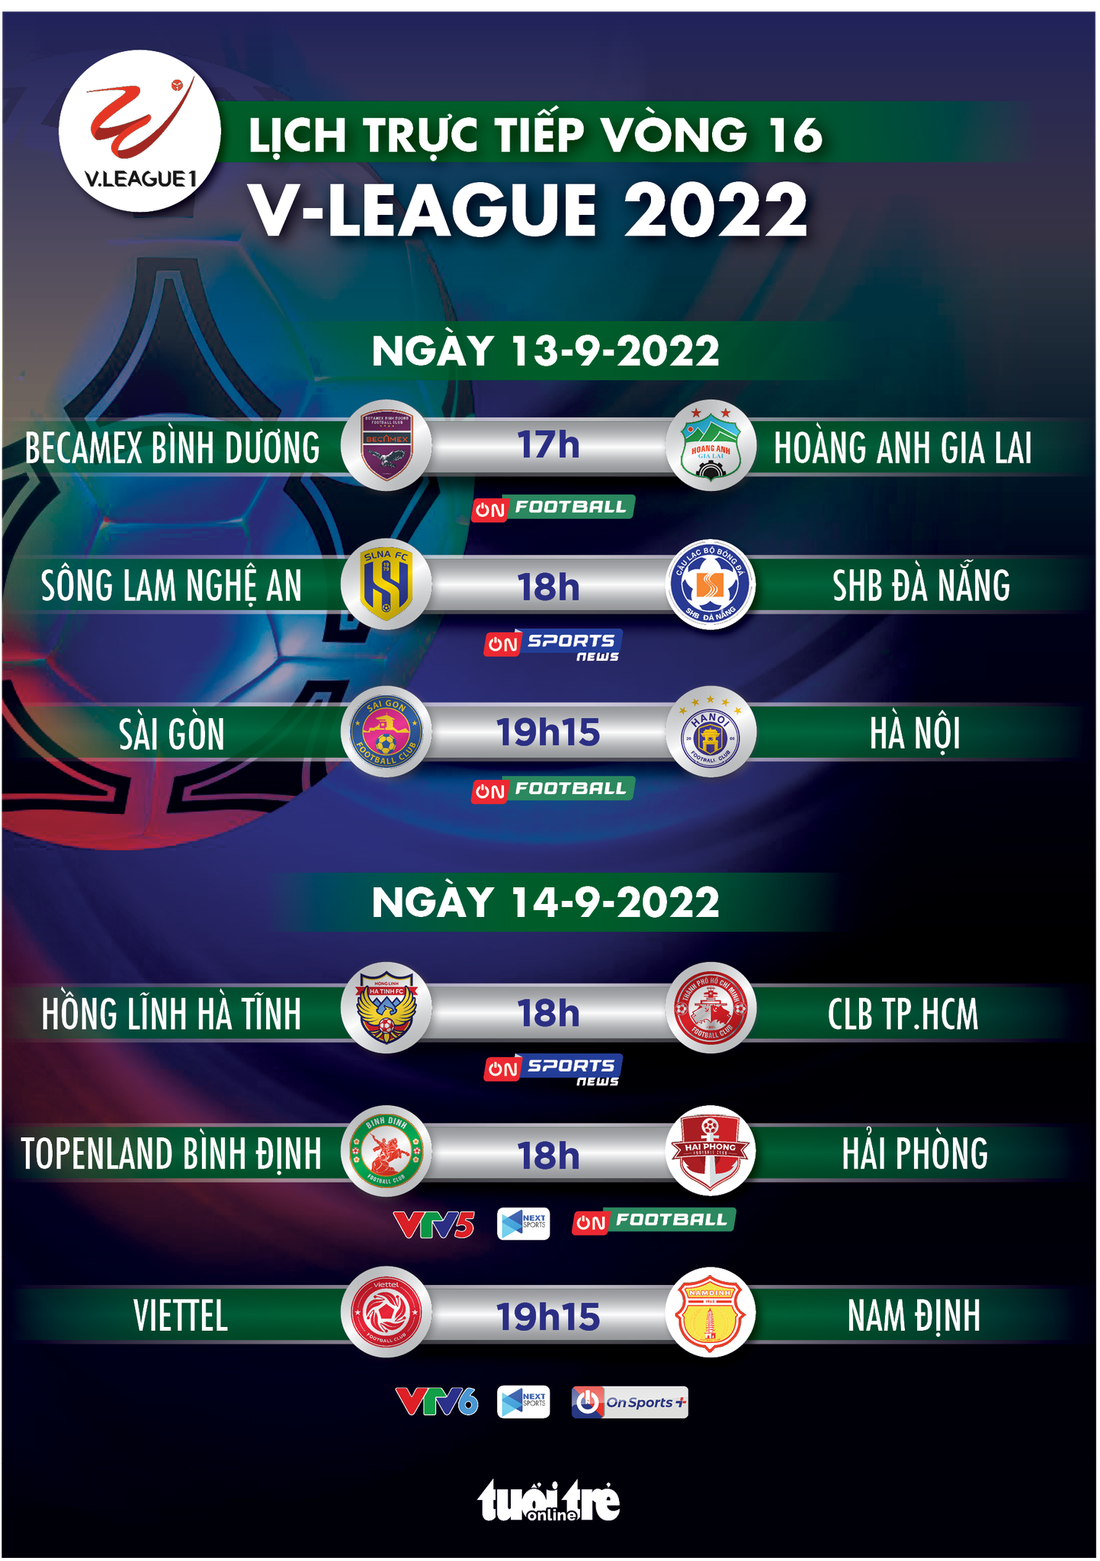 Lịch trực tiếp vòng 16 V-League 2022: Bình Dương - HAGL, Bình Định - Hải Phòng - Ảnh 1.